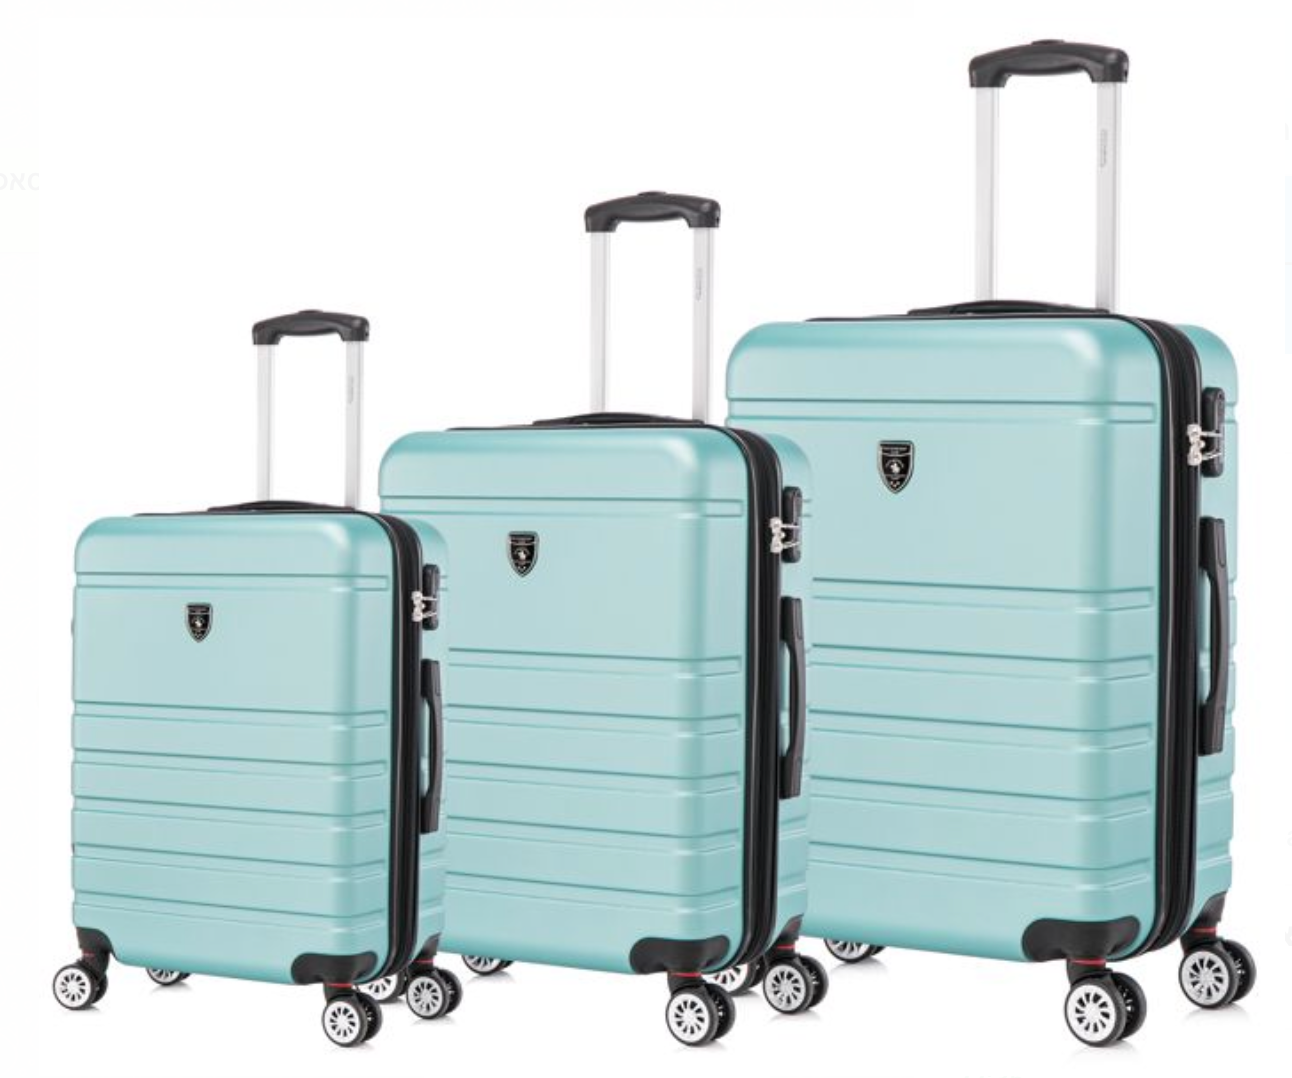 סט 3 מזוודות קשיחות דגם Tucson מבית המותג היוקרתי POLO CLUB